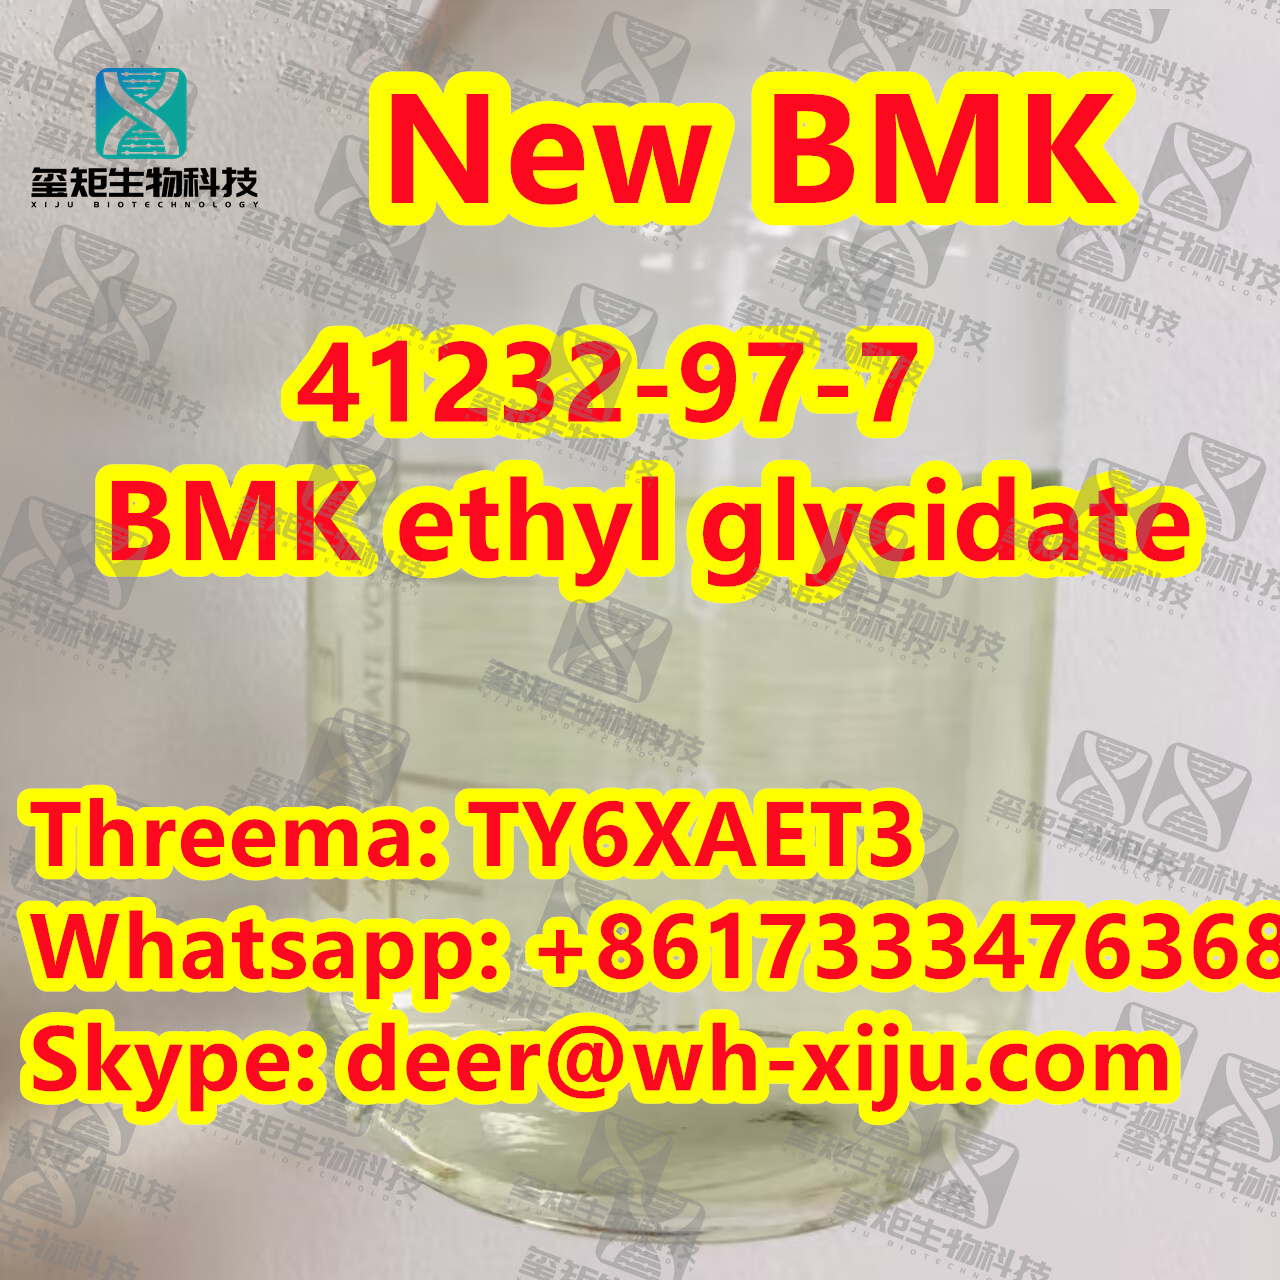 New BMK oil CAS 41232-97-7/BMK ethyl glycidate,Threema: TY6XAET3 Whatsapp/Tel: +86 17333476368